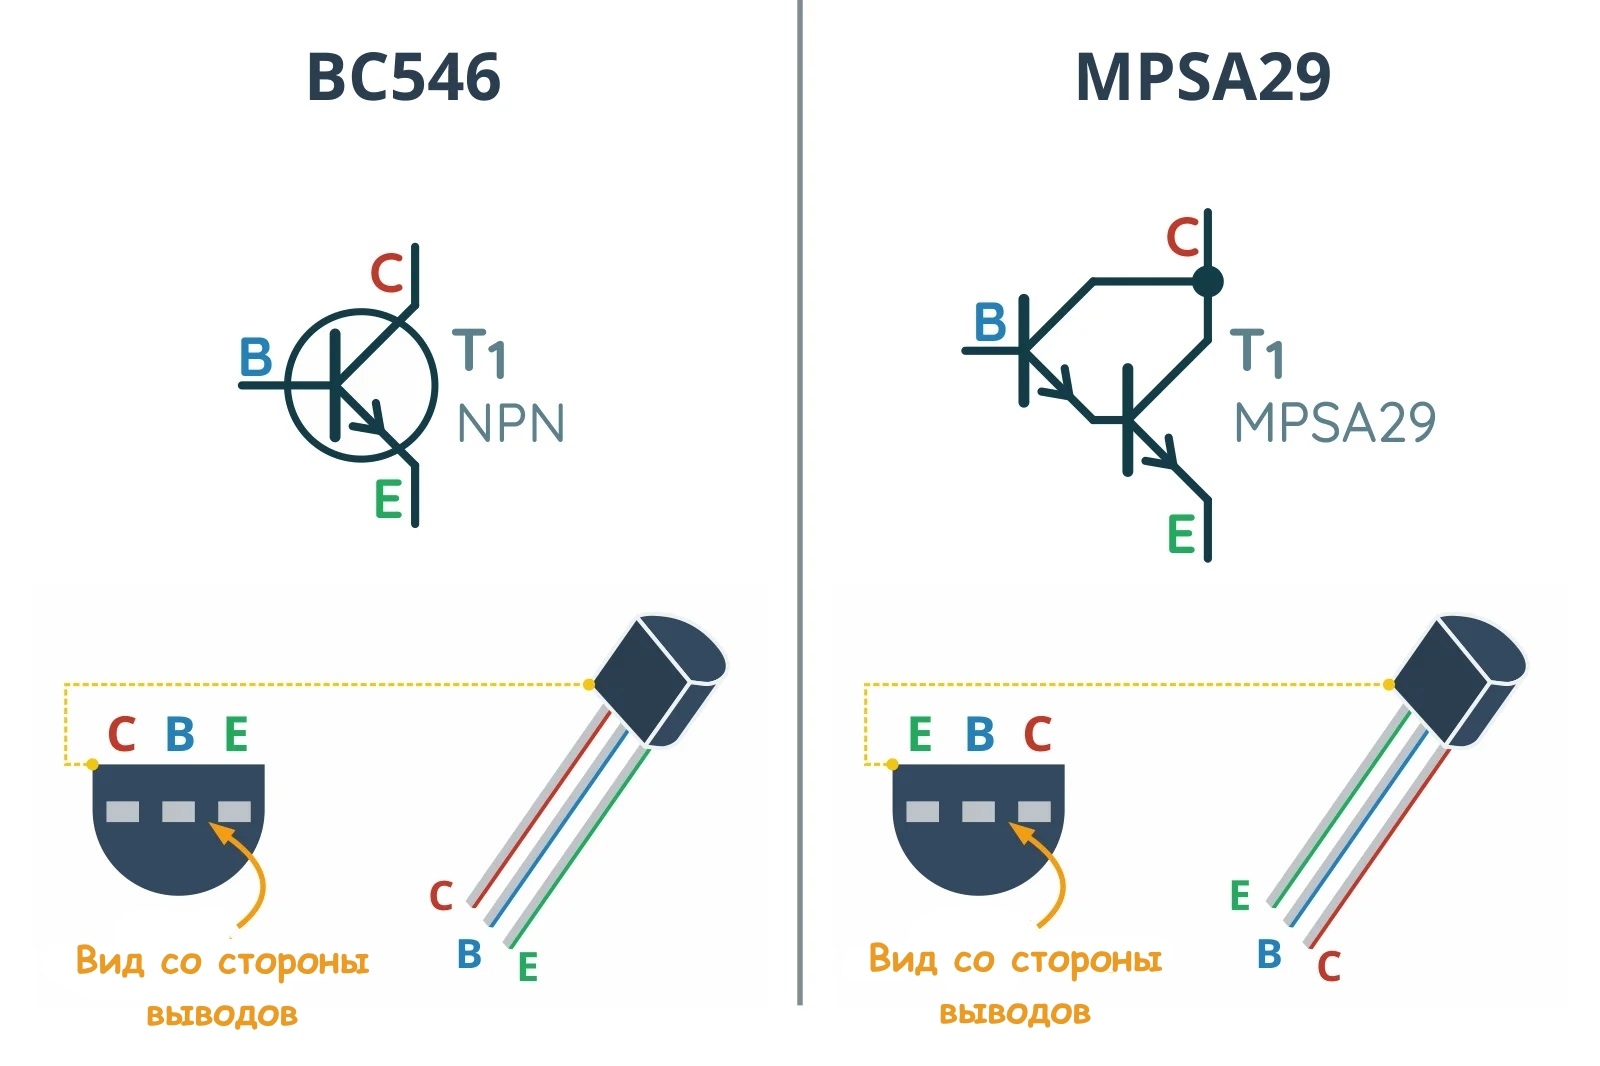 Сравнение выводов транзисторов BC546 и MPSA29